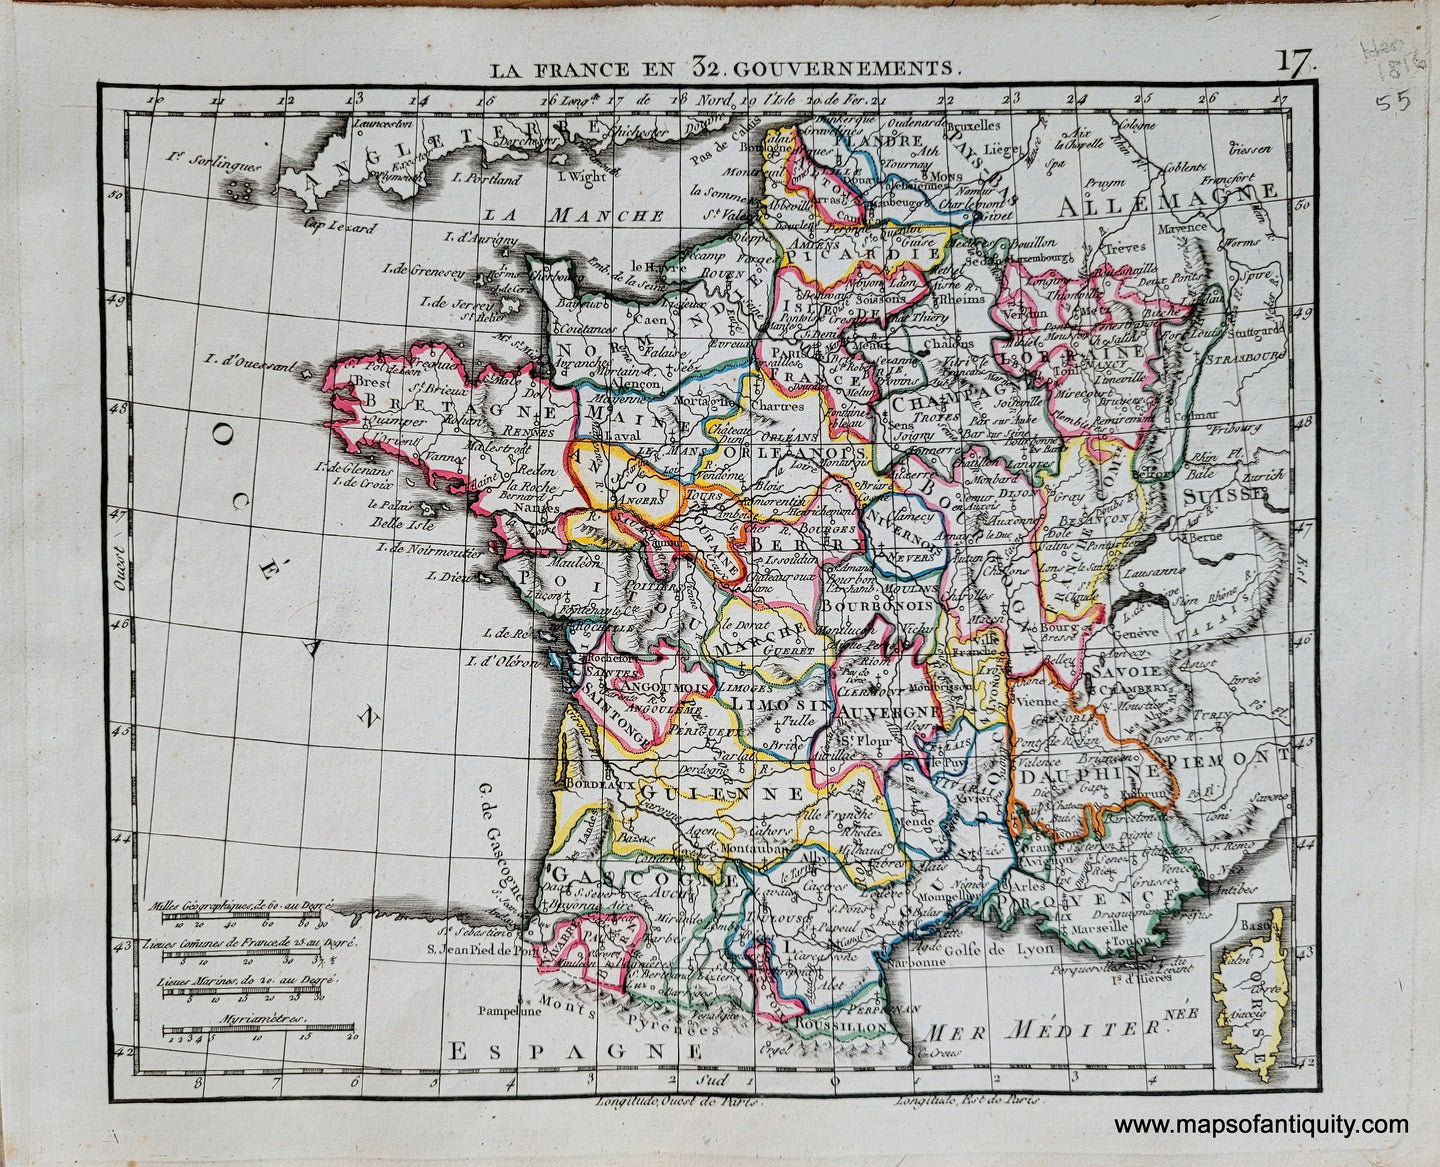 Genuine-Antique-Map-France-La-France-en-32-Gouvernements-France-1816-Herisson-Maps-Of-Antiquity-1800s-19th-century